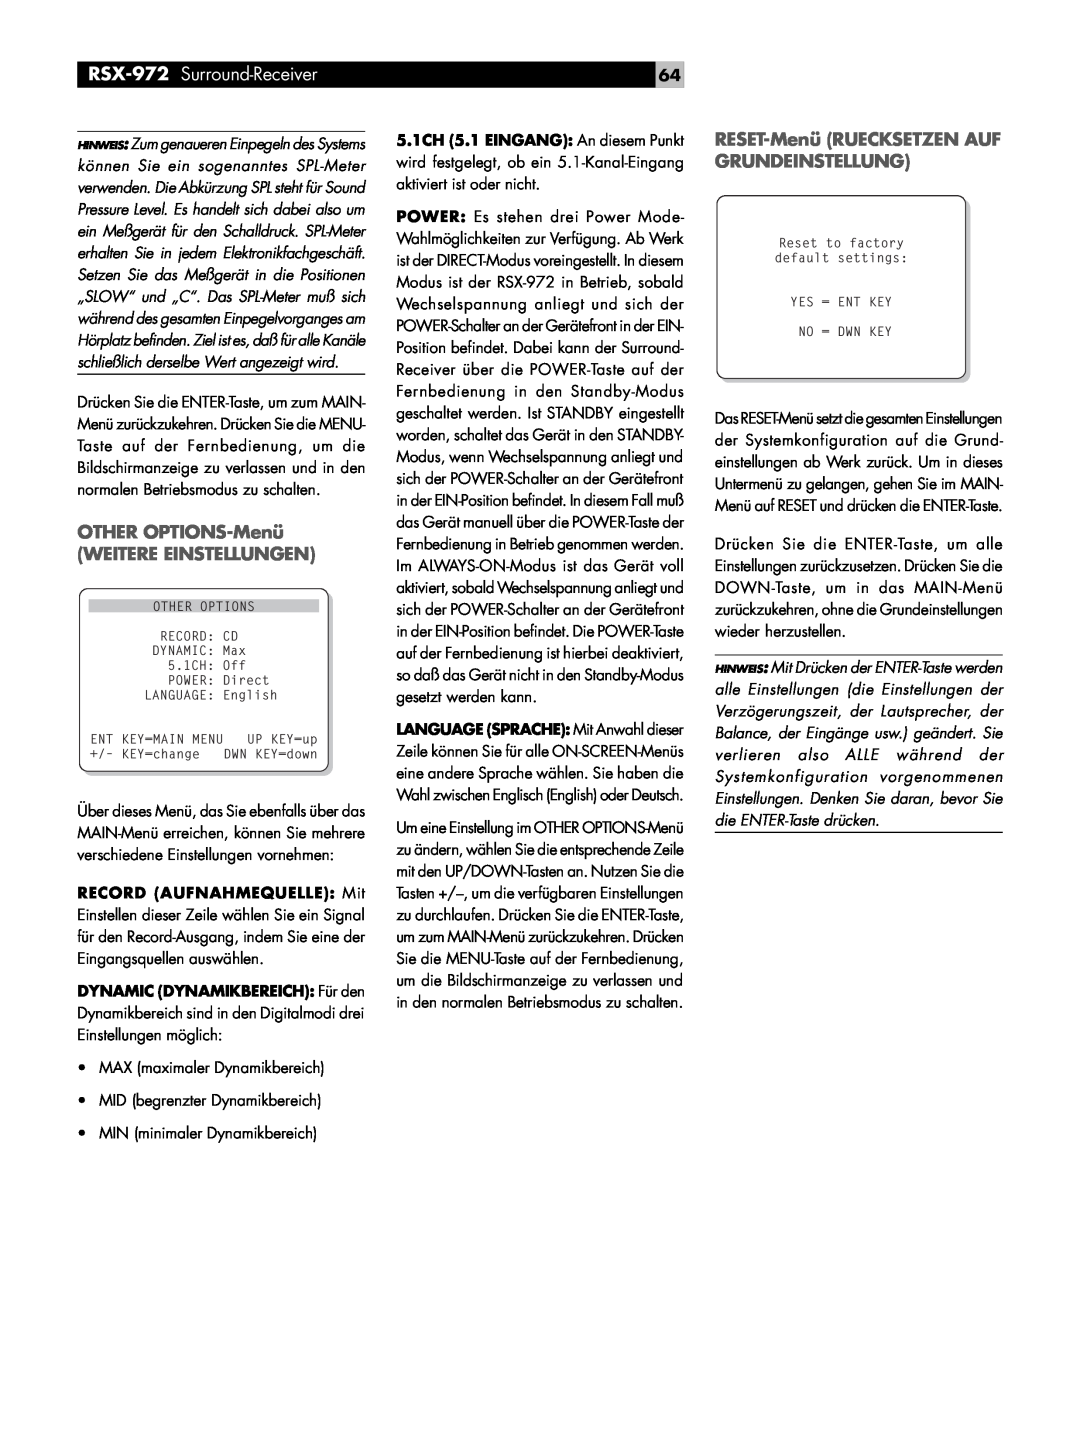 Rotel RSX-972 owner manual OTHER OPTIONS-Menü WEITERE EINSTELLUNGEN, RESET-MenüRUECKSETZEN AUF GRUNDEINSTELLUNG 